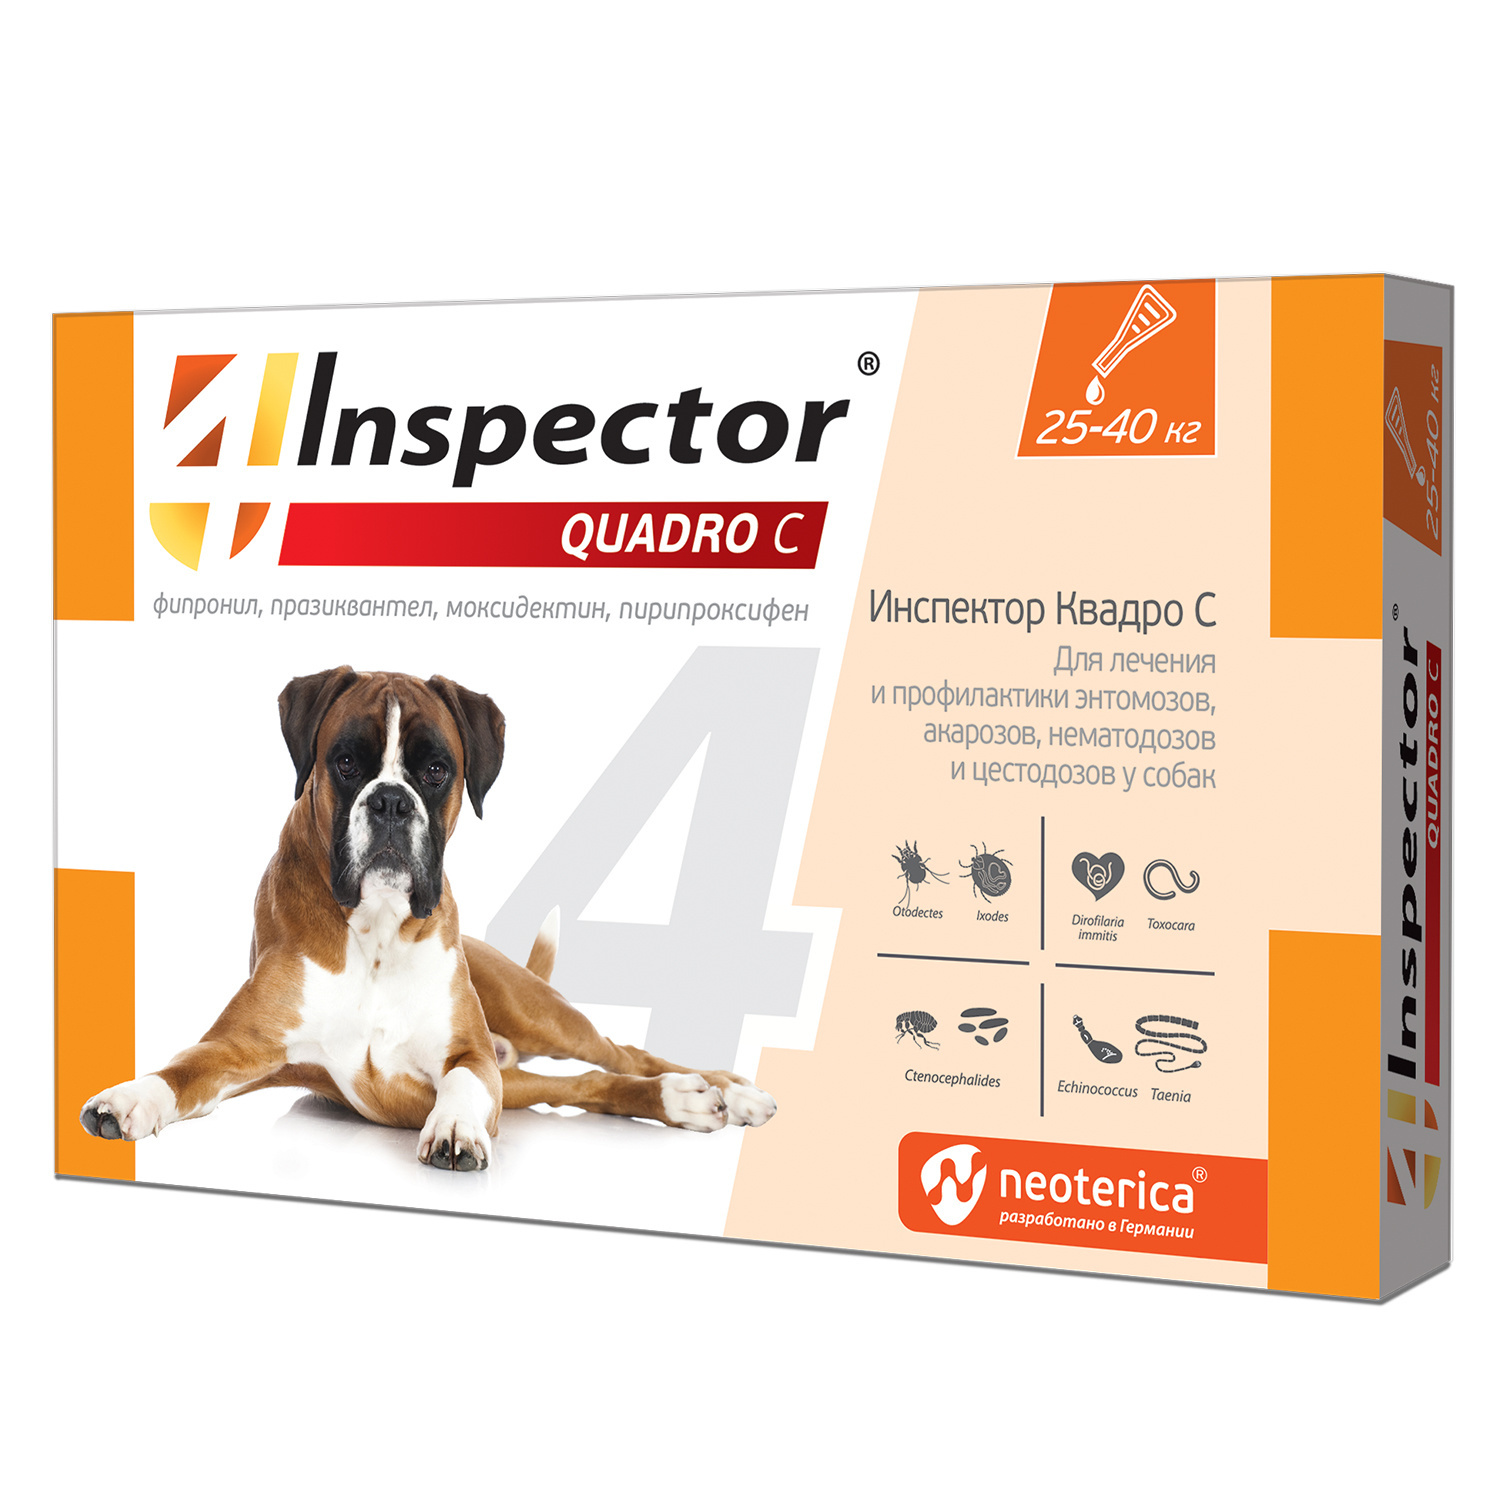 Inspector Inspector quadro капли на холку для собак 25-40 кг, от клещей, насекомых, глистов (24 г) 44624